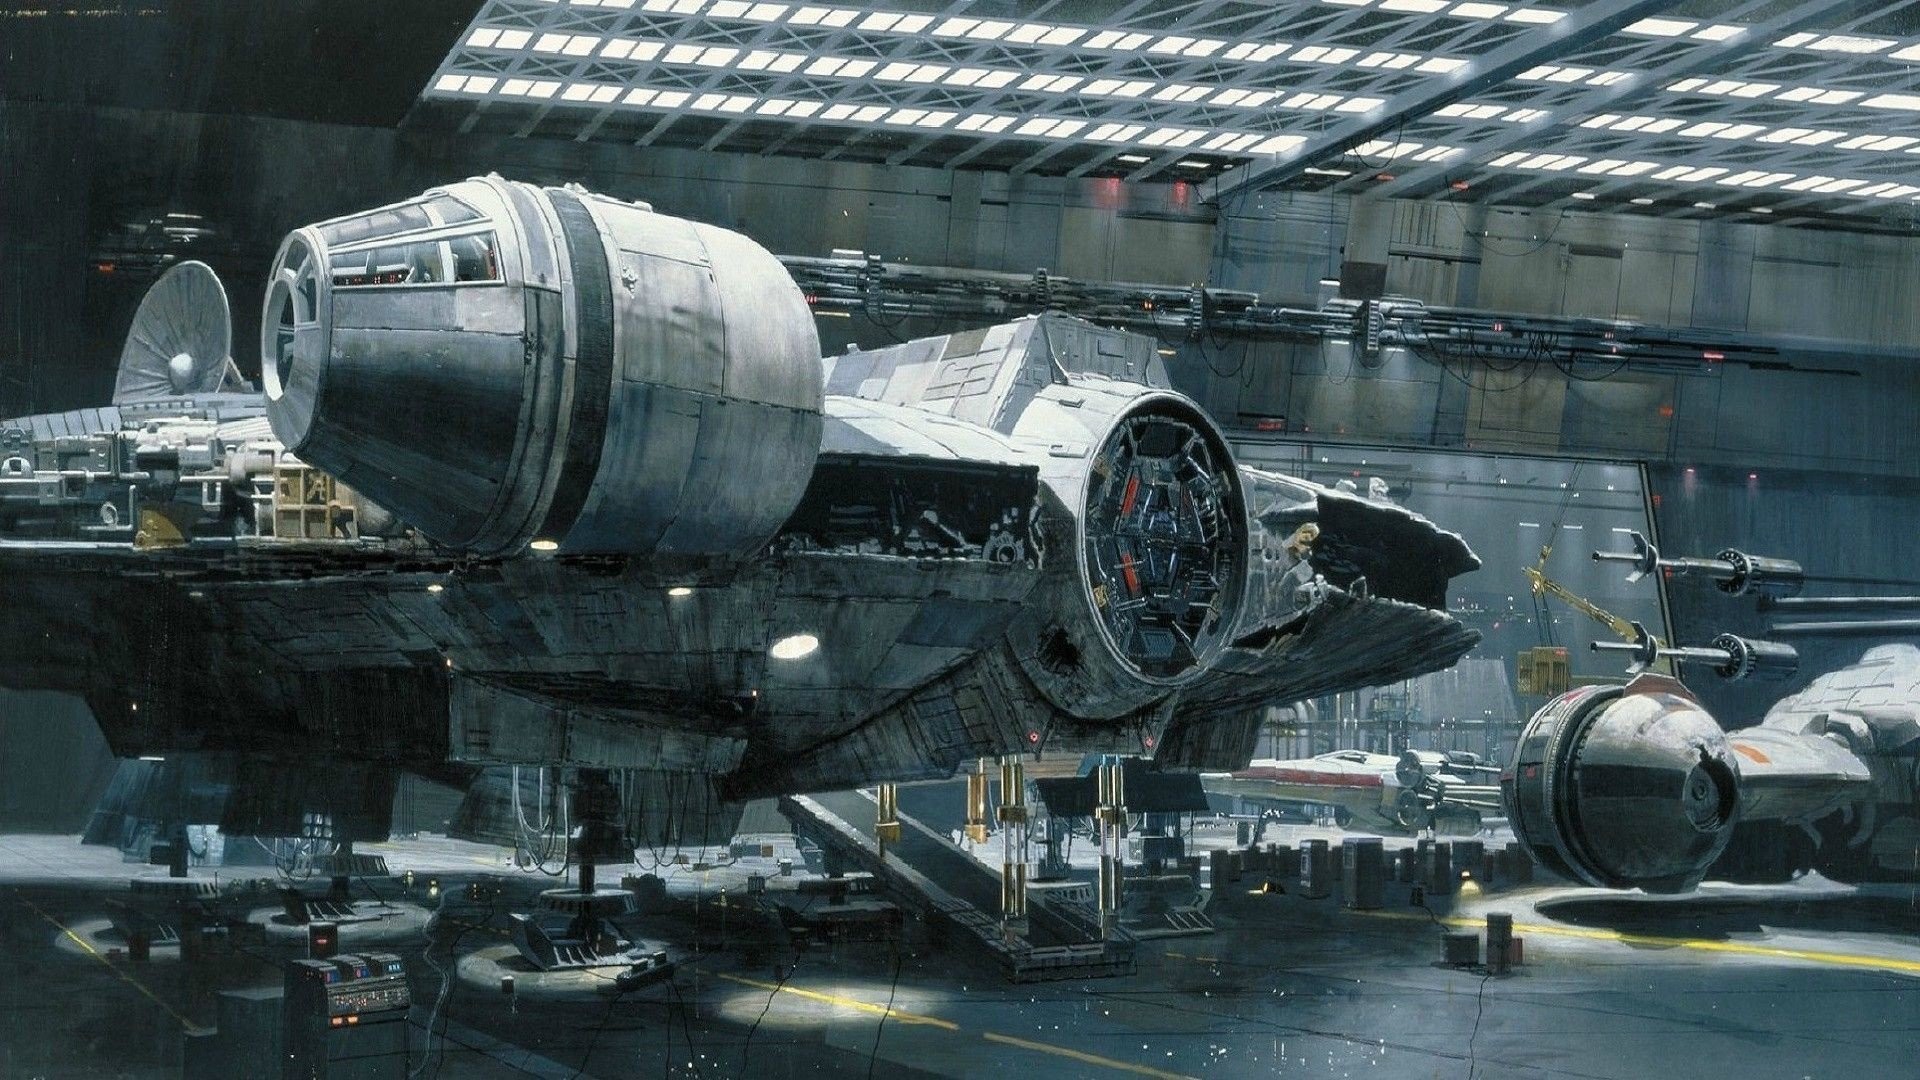 Star Wars Millenium Falcon Spaceships